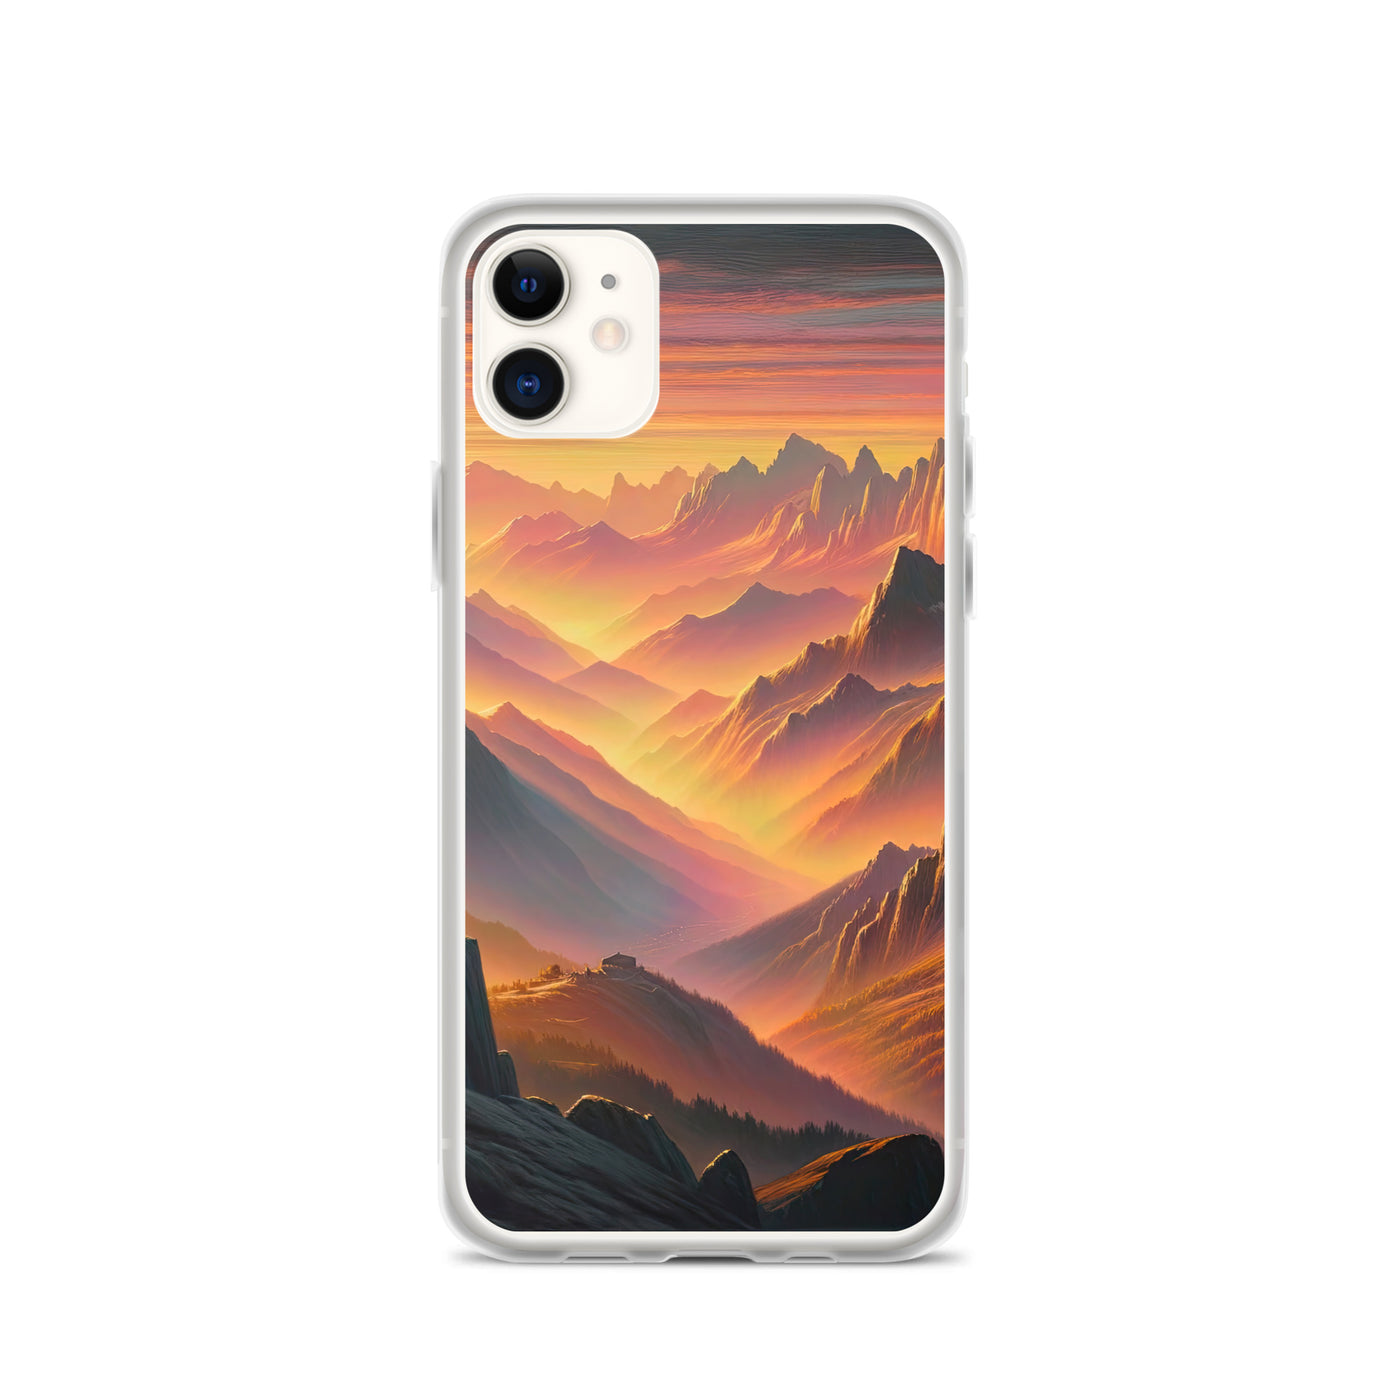 Ölgemälde der Alpen in der goldenen Stunde mit Wanderer, Orange-Rosa Bergpanorama - iPhone Schutzhülle (durchsichtig) wandern xxx yyy zzz iPhone 11